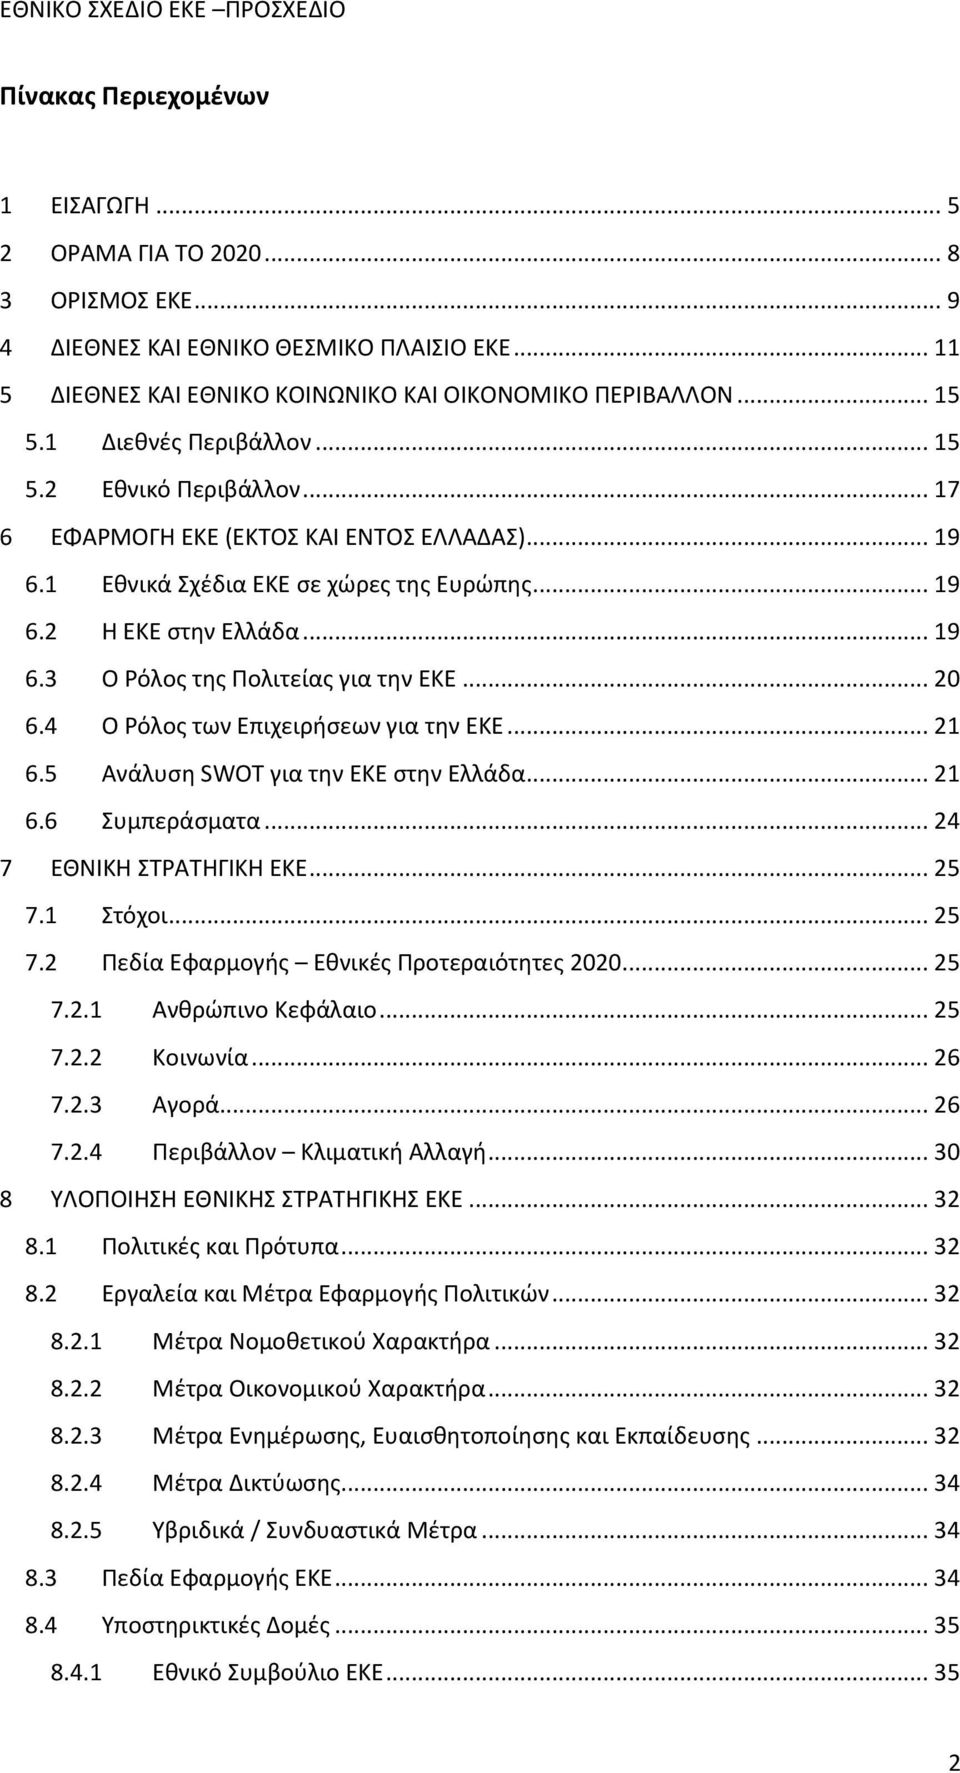 .. 20 6.4 Ο Ρόλος των Επιχειρήσεων για την ΕΚΕ... 21 6.5 Ανάλυση SWOT για την ΕΚΕ στην Ελλάδα... 21 6.6 Συμπεράσματα... 24 7 ΕΘΝΙΚΗ ΣΤΡΑΤΗΓΙΚΗ ΕΚΕ... 25 7.